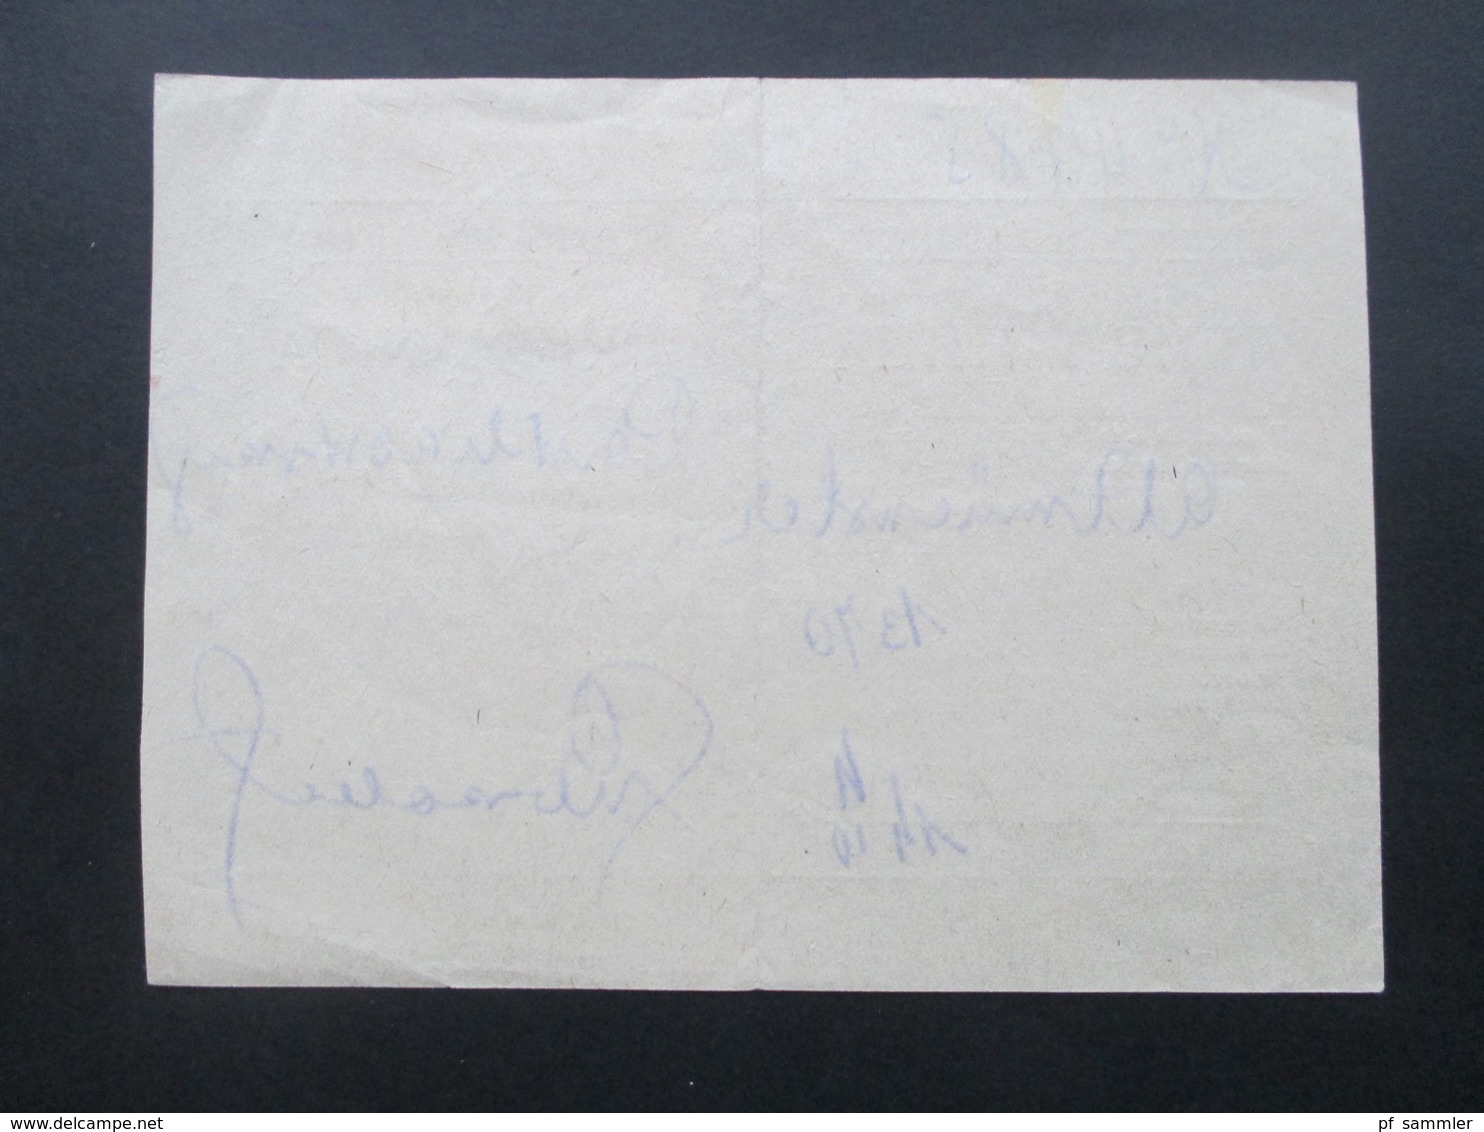 Jugoslawien 1921 Serbien ?! Rasierklingen Stempel Einschreibebeleg ? Paketkarte ? Einlieferungsschein ? - Lettres & Documents